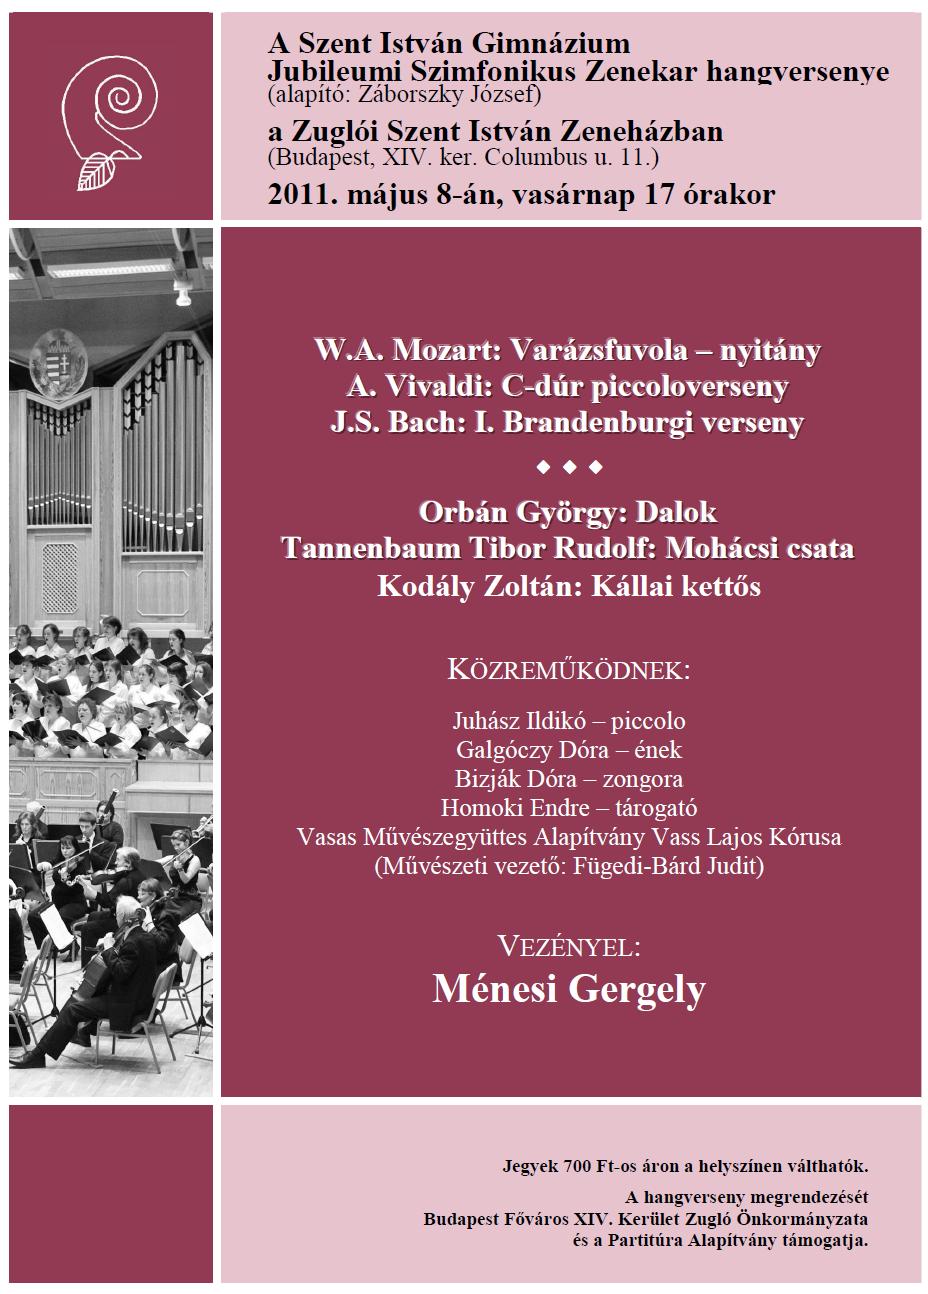 2011.05.08. Zugli Zenehz. Mozart, Vivaldi, Bach, vez: Mnesi Gergely